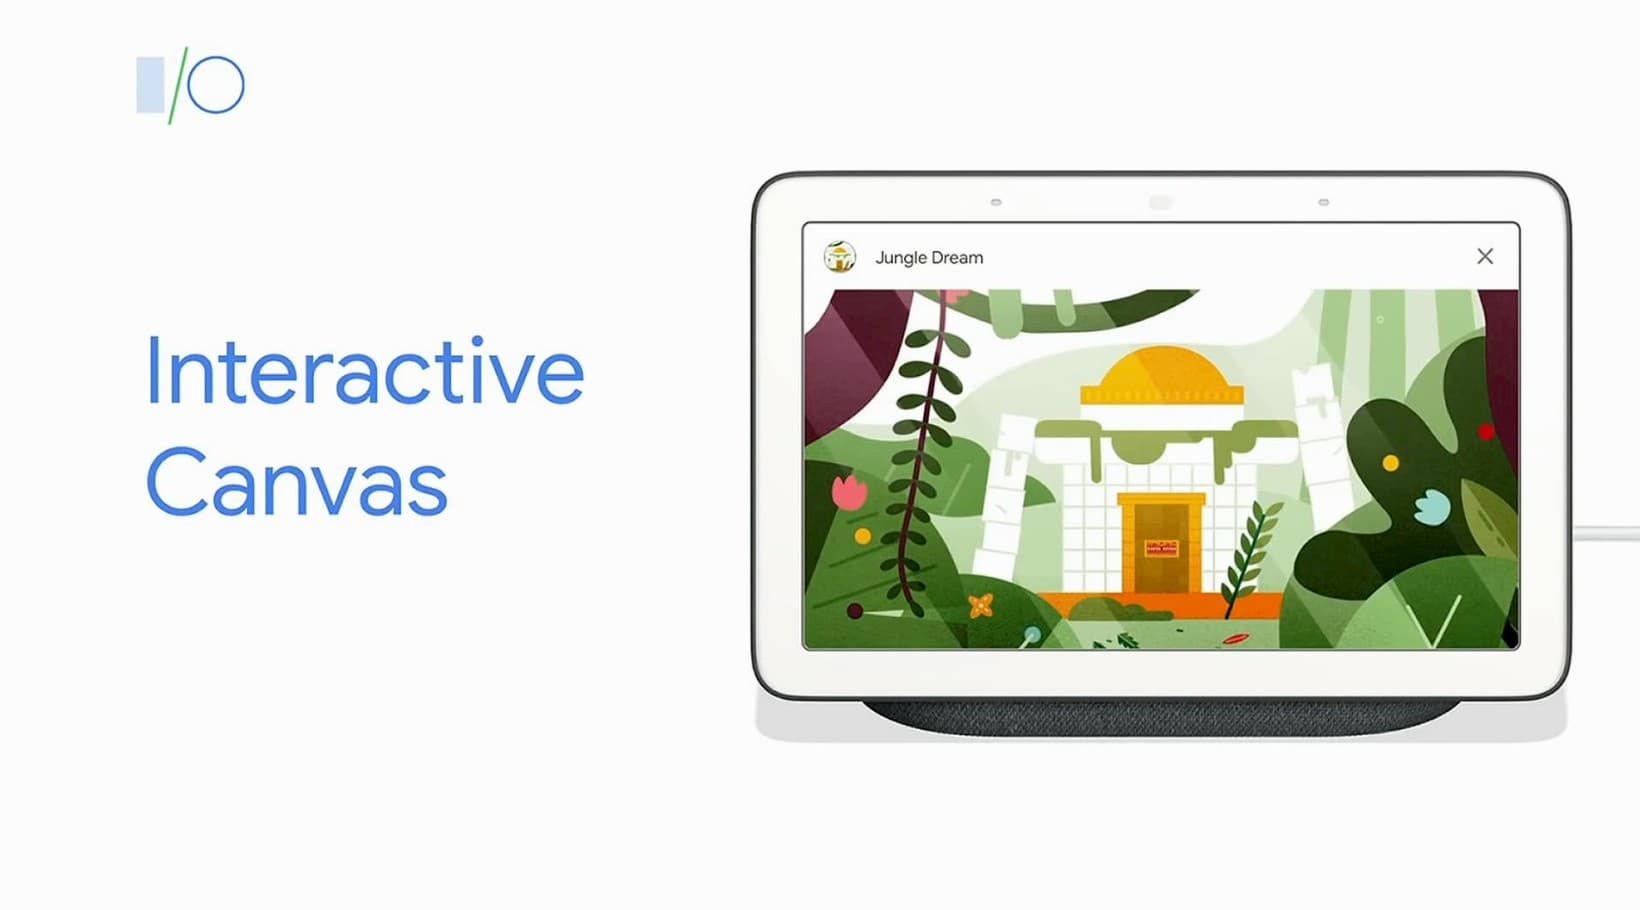 ลองเล่น Interactive Canvas เมื่อหน้าเว็บไปโผล่บน Google Assistant และคุมได้ด้วยเสียง